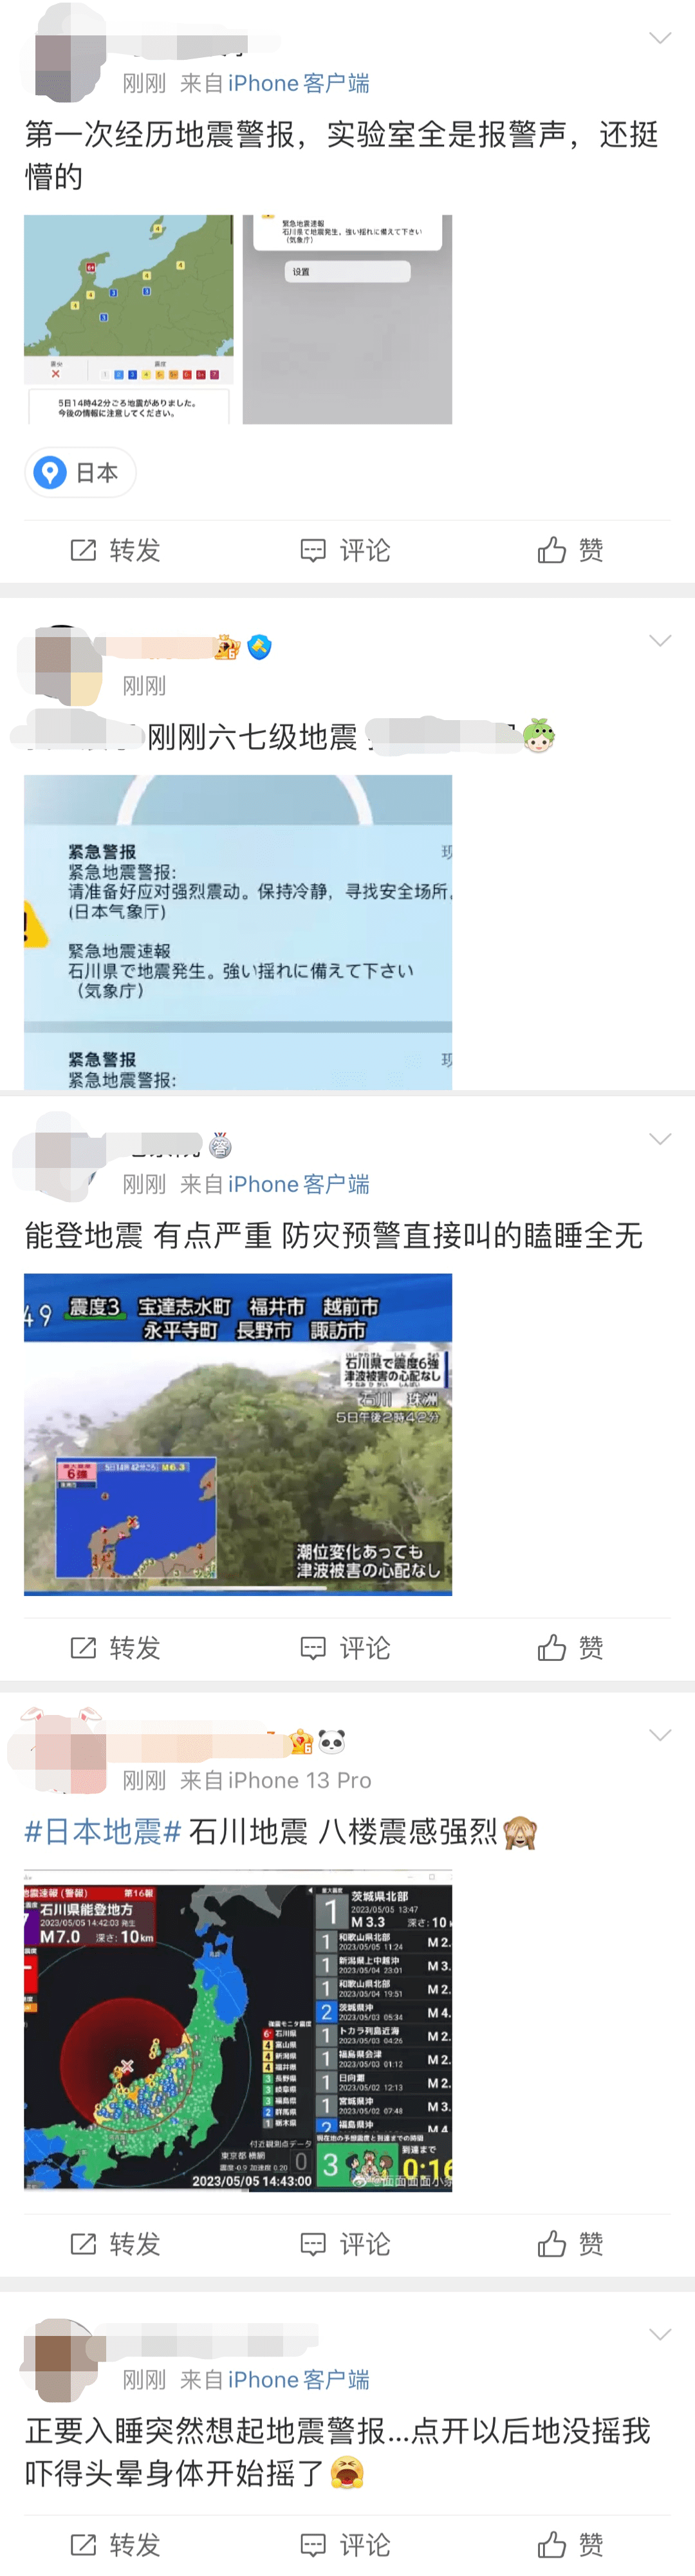 日本福岛以东海域发生7.3级地震，同一海域十年前曾发生大地震 - 知乎